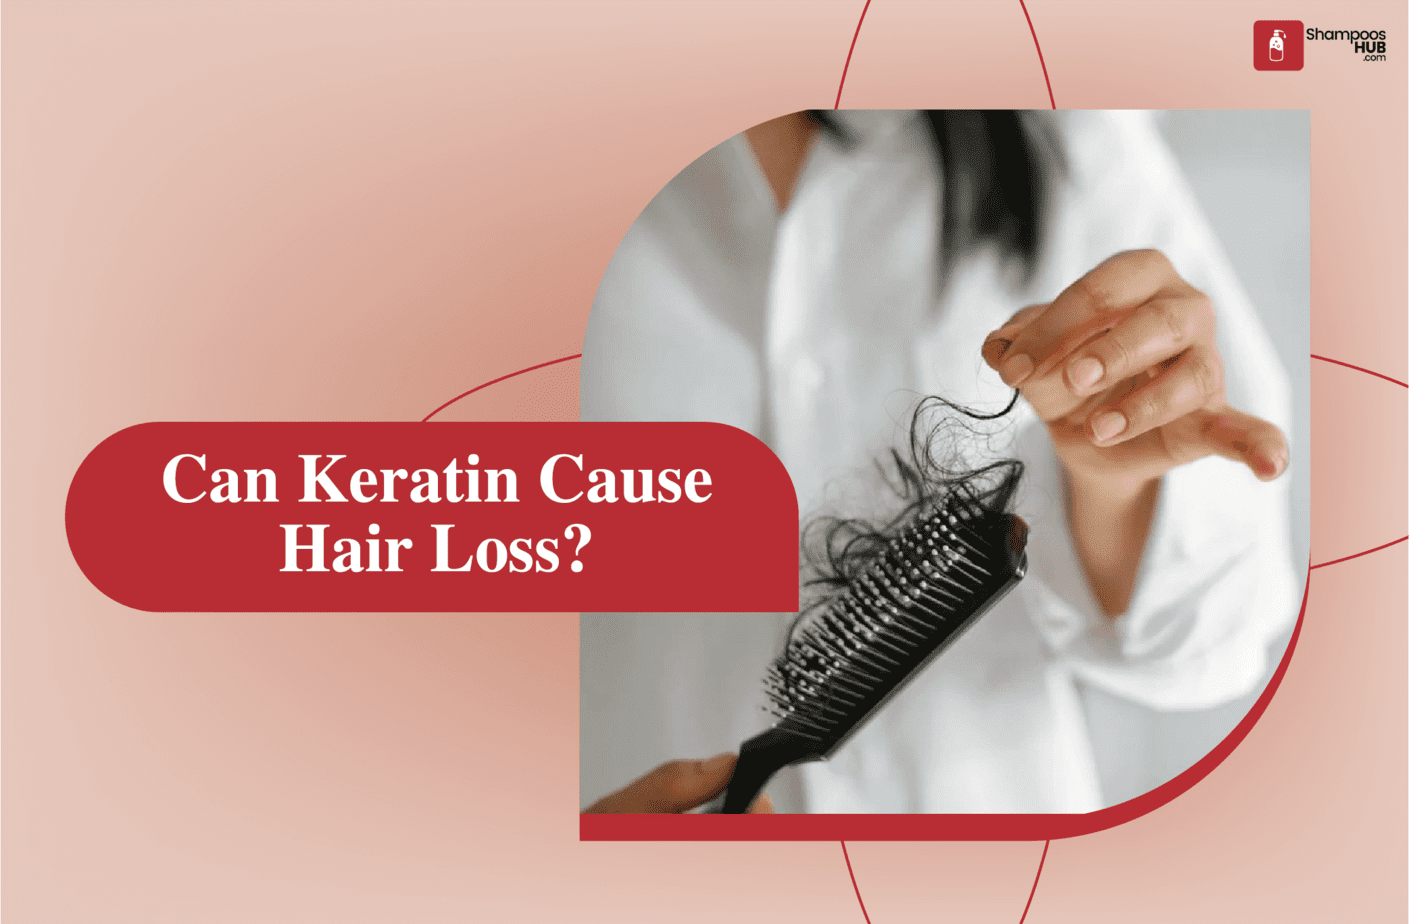 Can Keratin Cause Hair Loss?